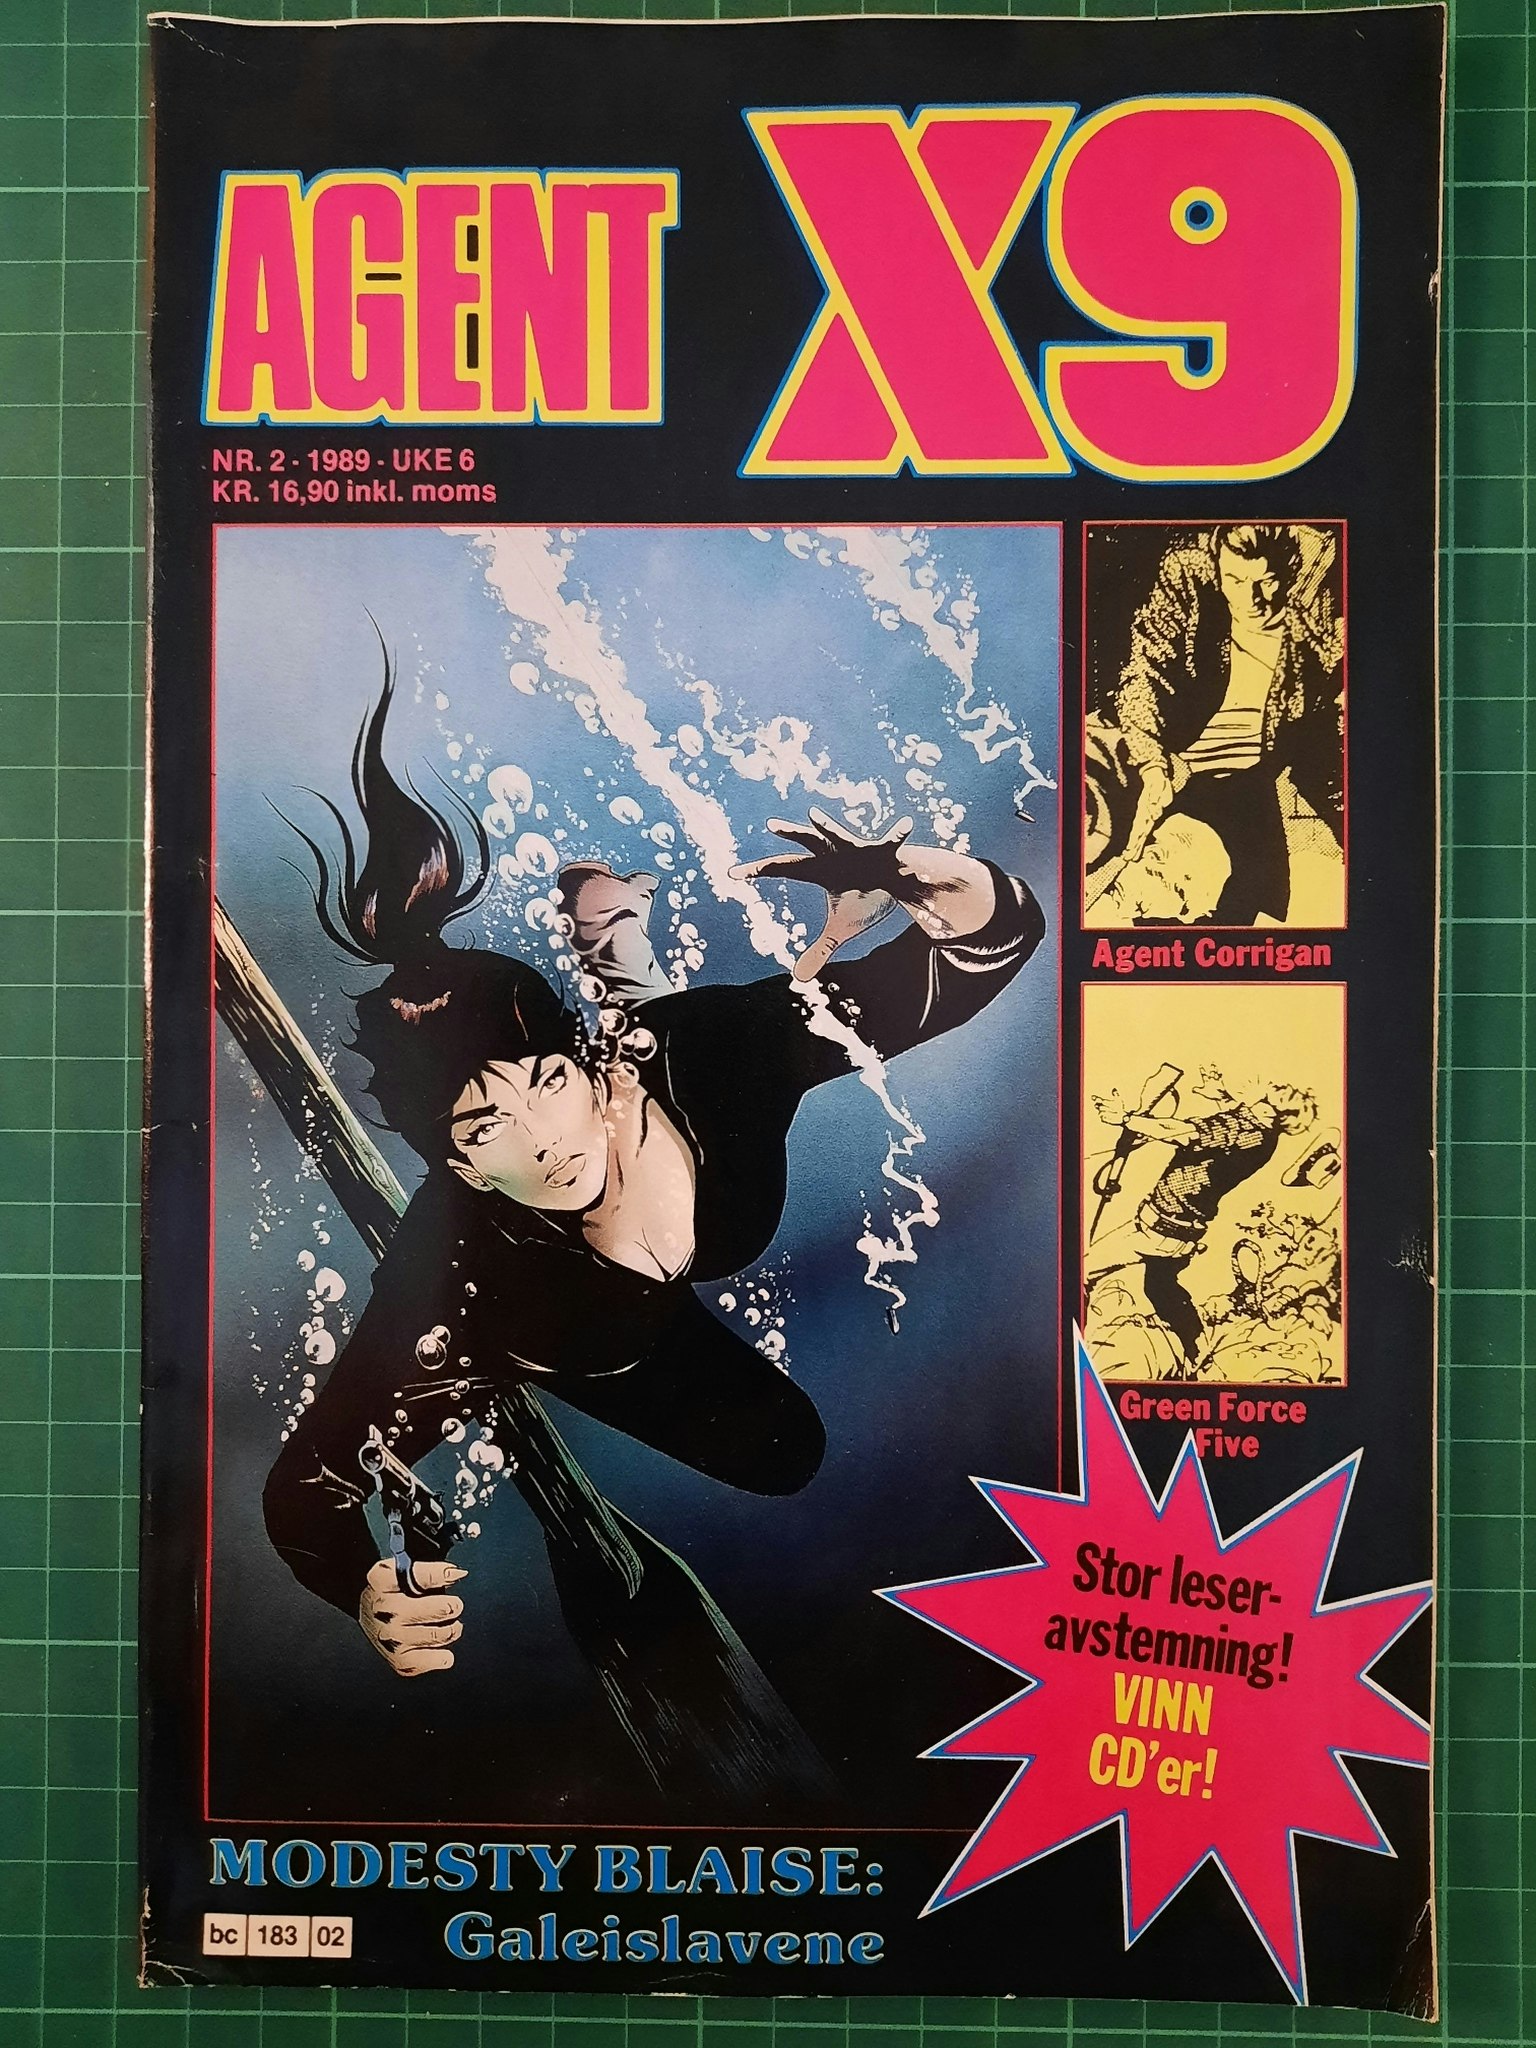 Agent X9 1989 - 02